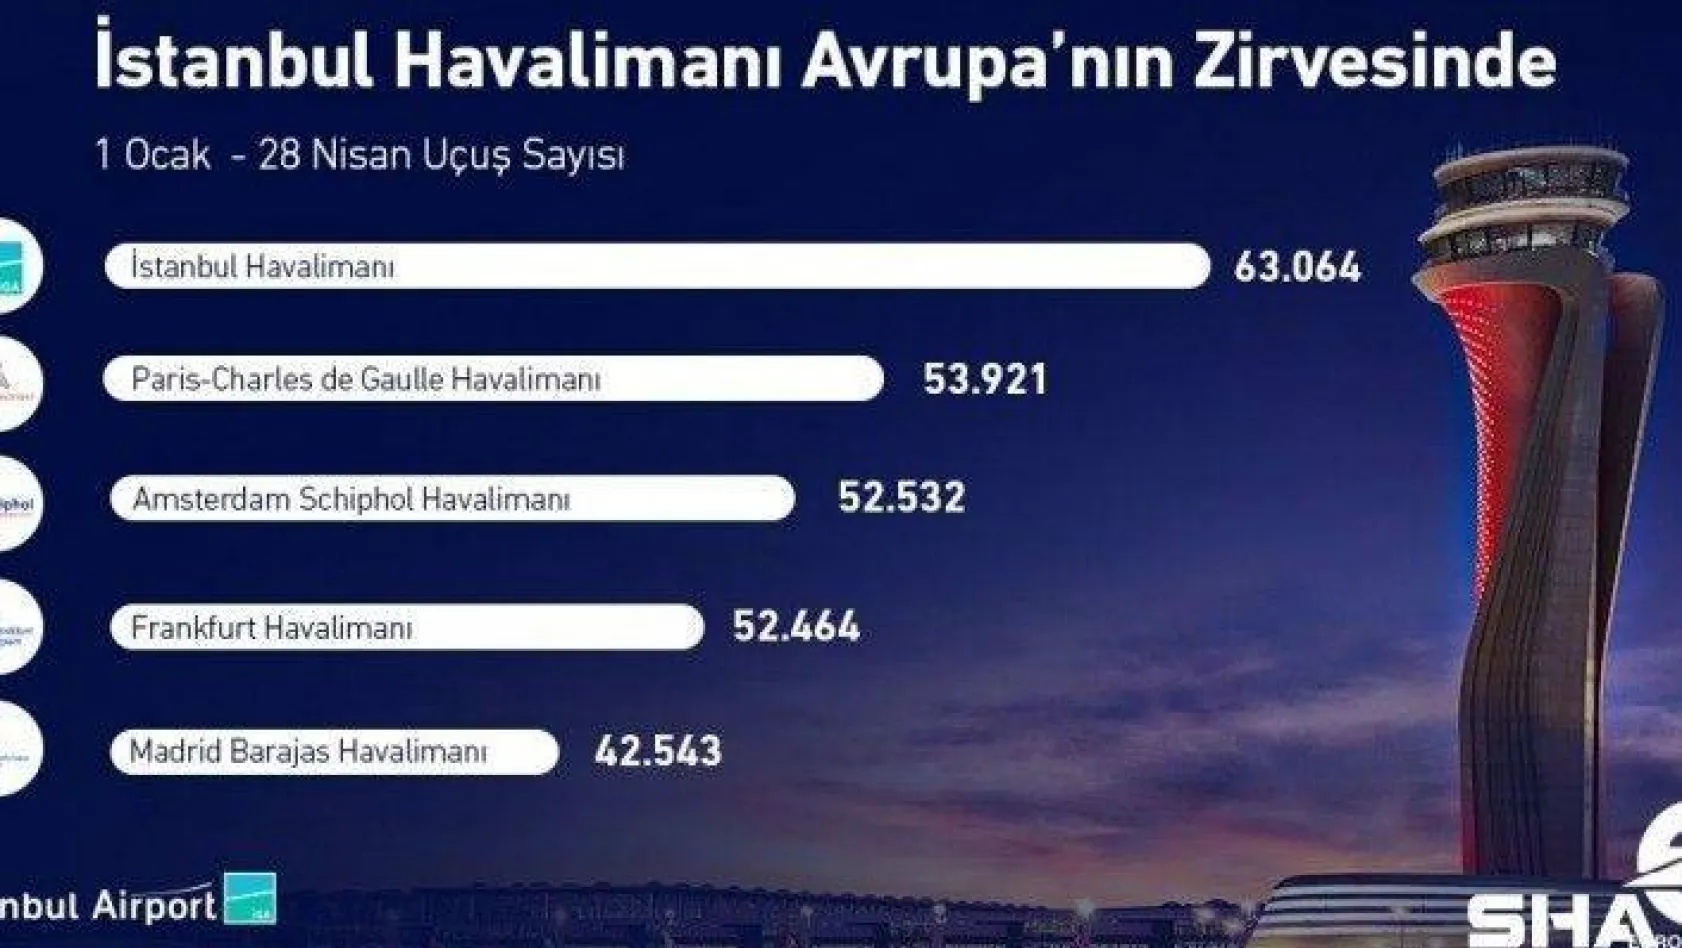 İstanbul Havalimanı yılın ilk 4 ayında 63 bin uçuşla Avrupa'nın zirvesinde yer aldı